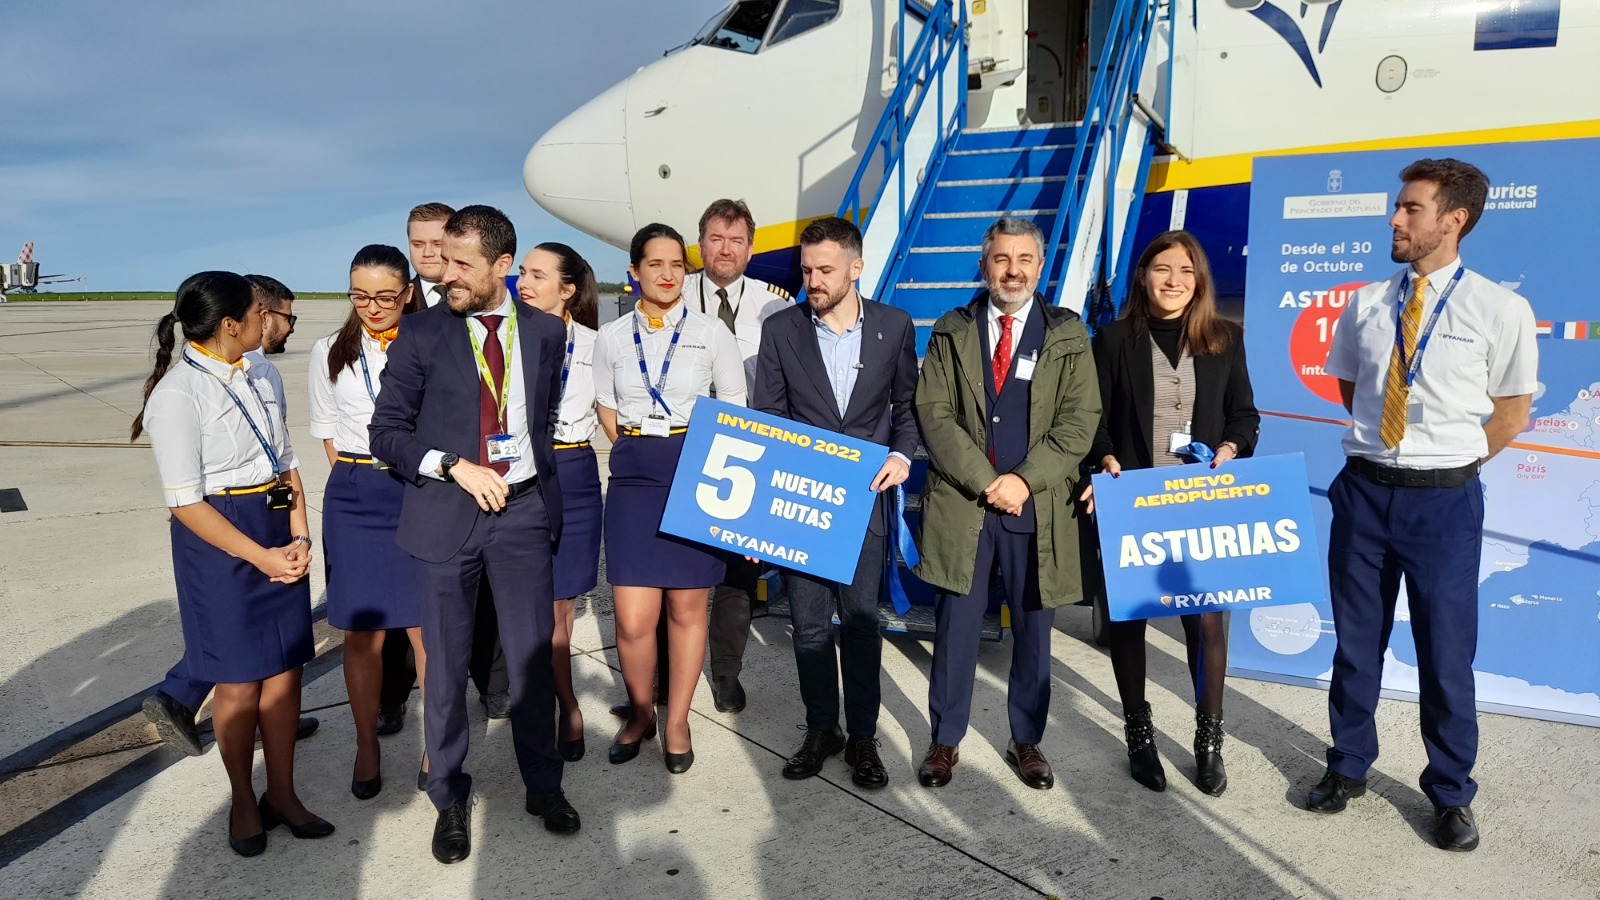 Ryanair Despega De Asturias Para El Invierno’22 5 Nuevas Rutas Internacionales